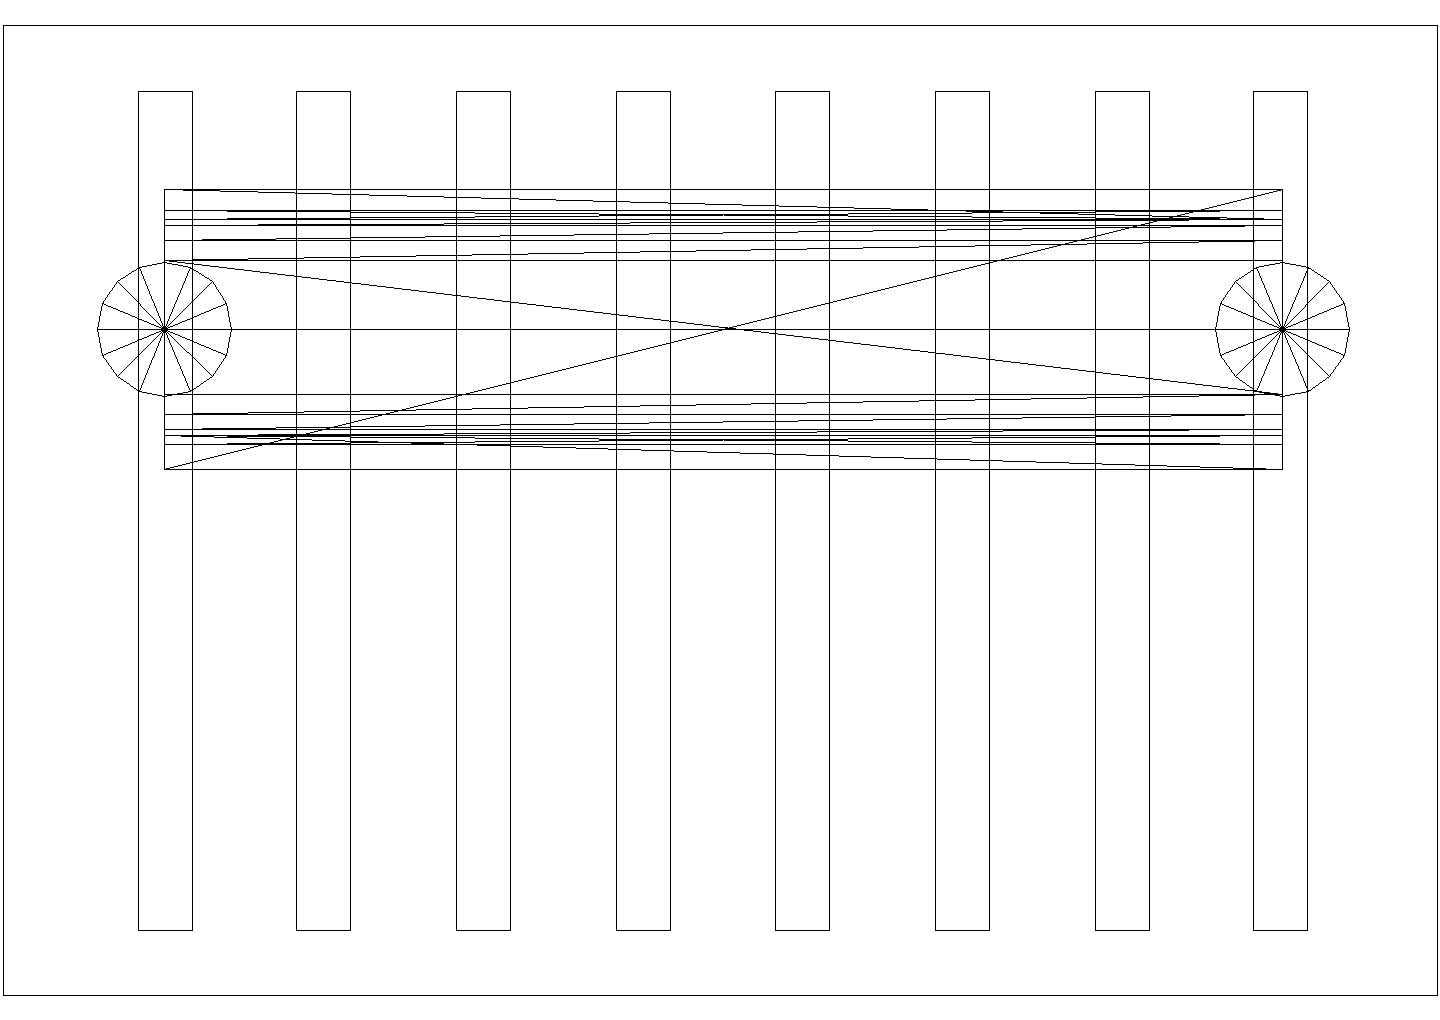 某轻钢花架CAD设计详细完整构造图